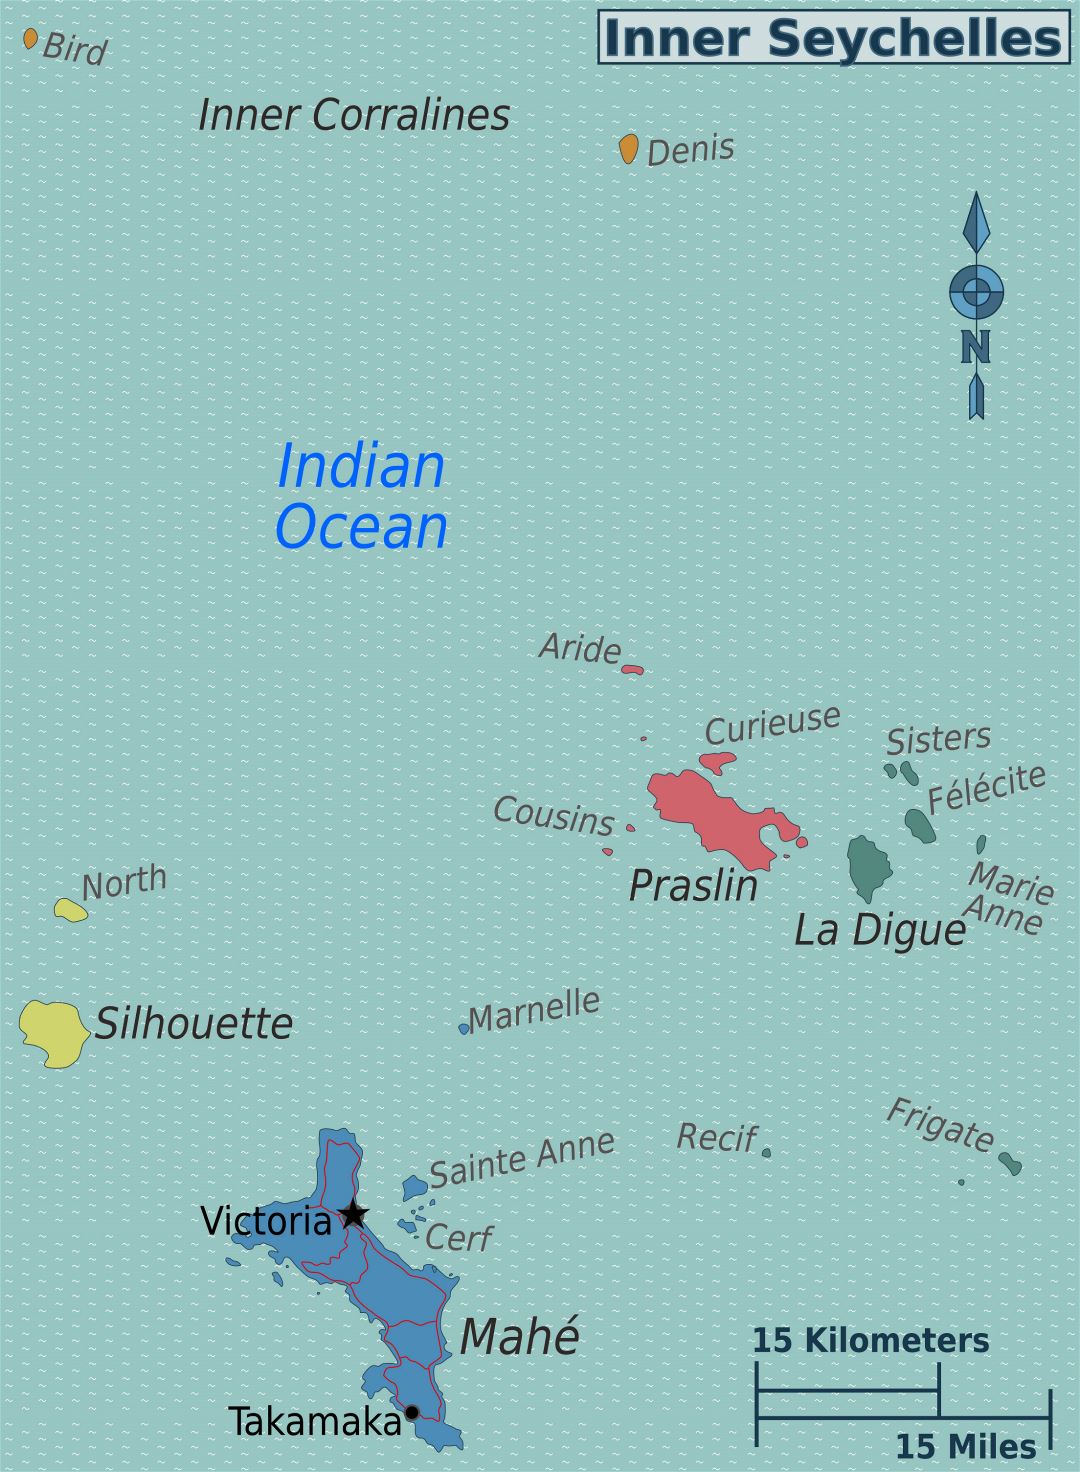 Большая карта регионов Сейшельских островов